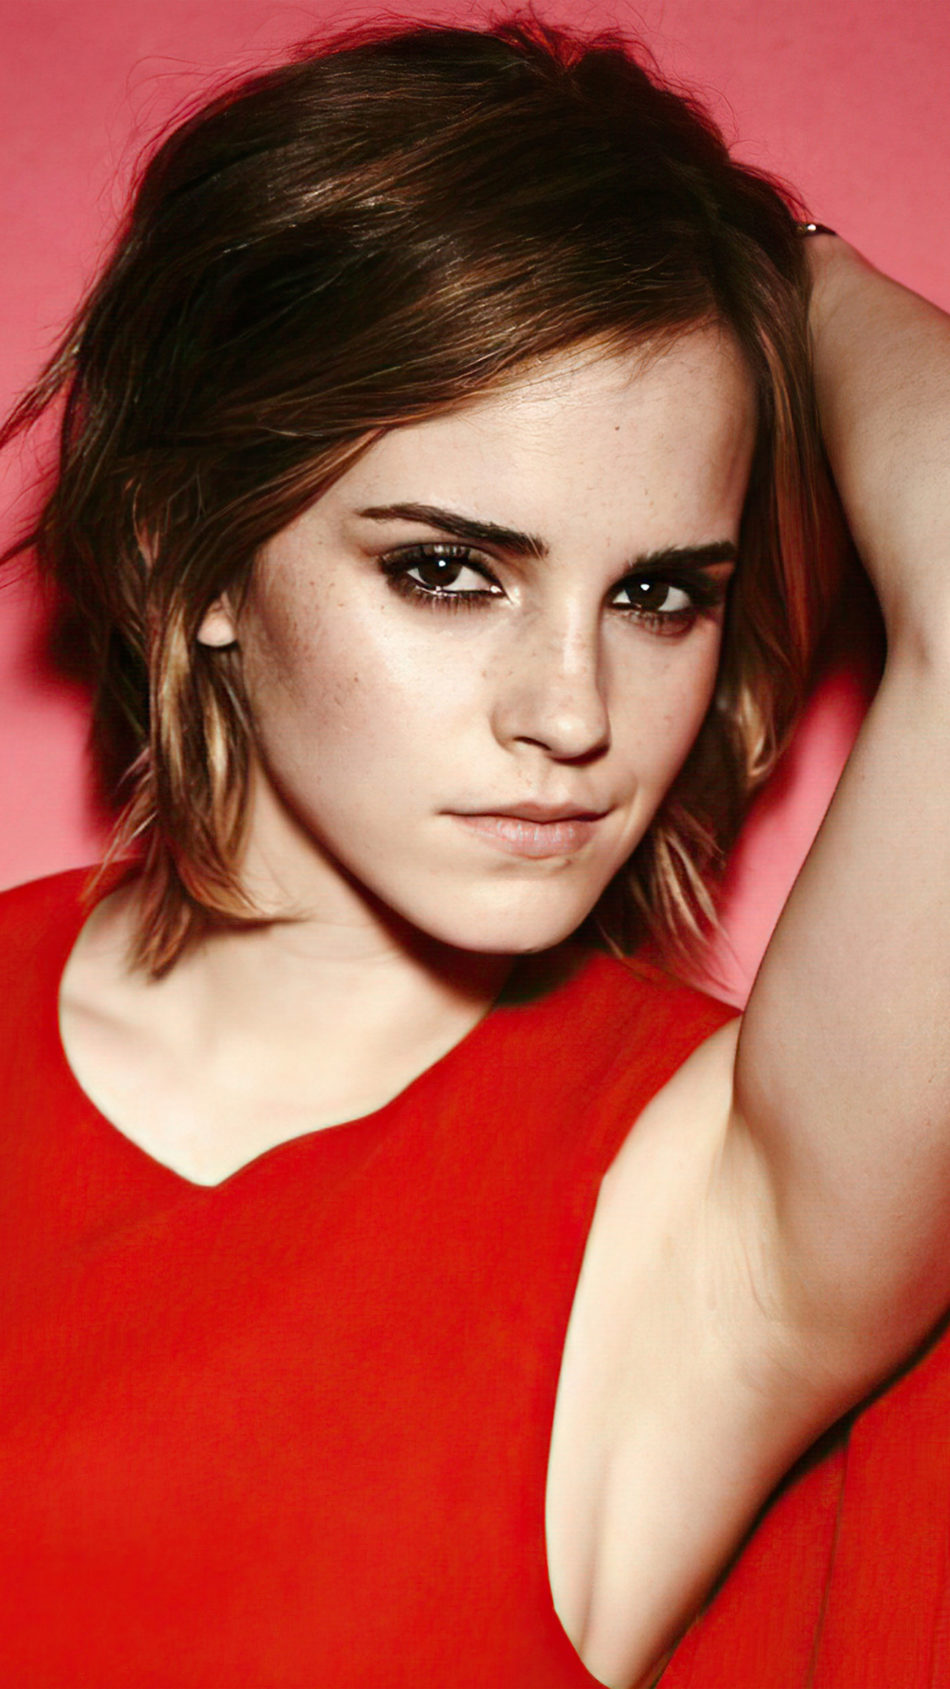 Emma Watson In Beautiful Red Dress 4K Ultra HD Mobile ...